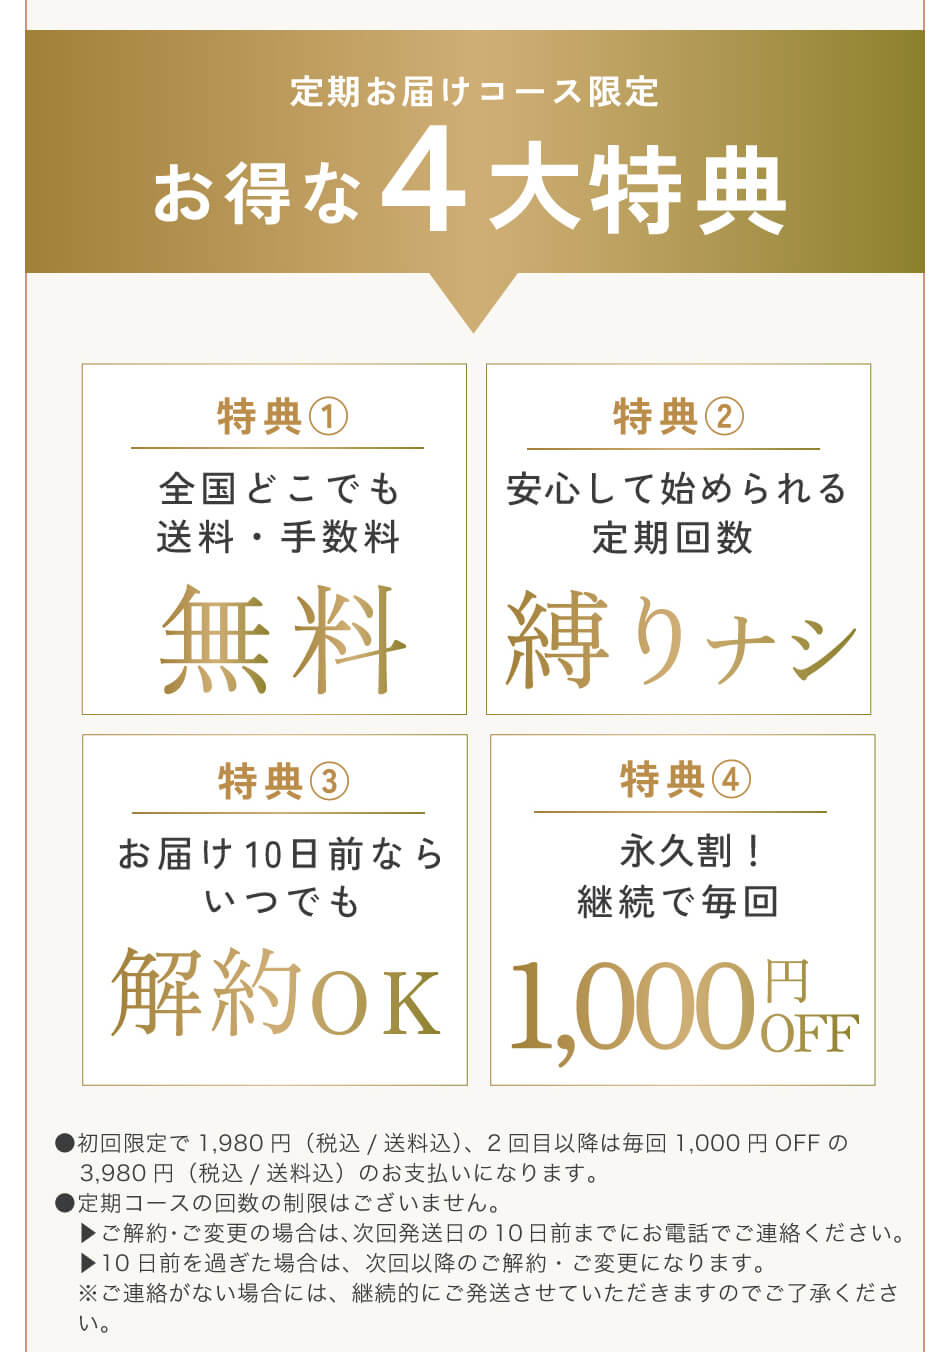 キレイデボーテ プラセンタジュレ 初回限定価格1,980円送料無料